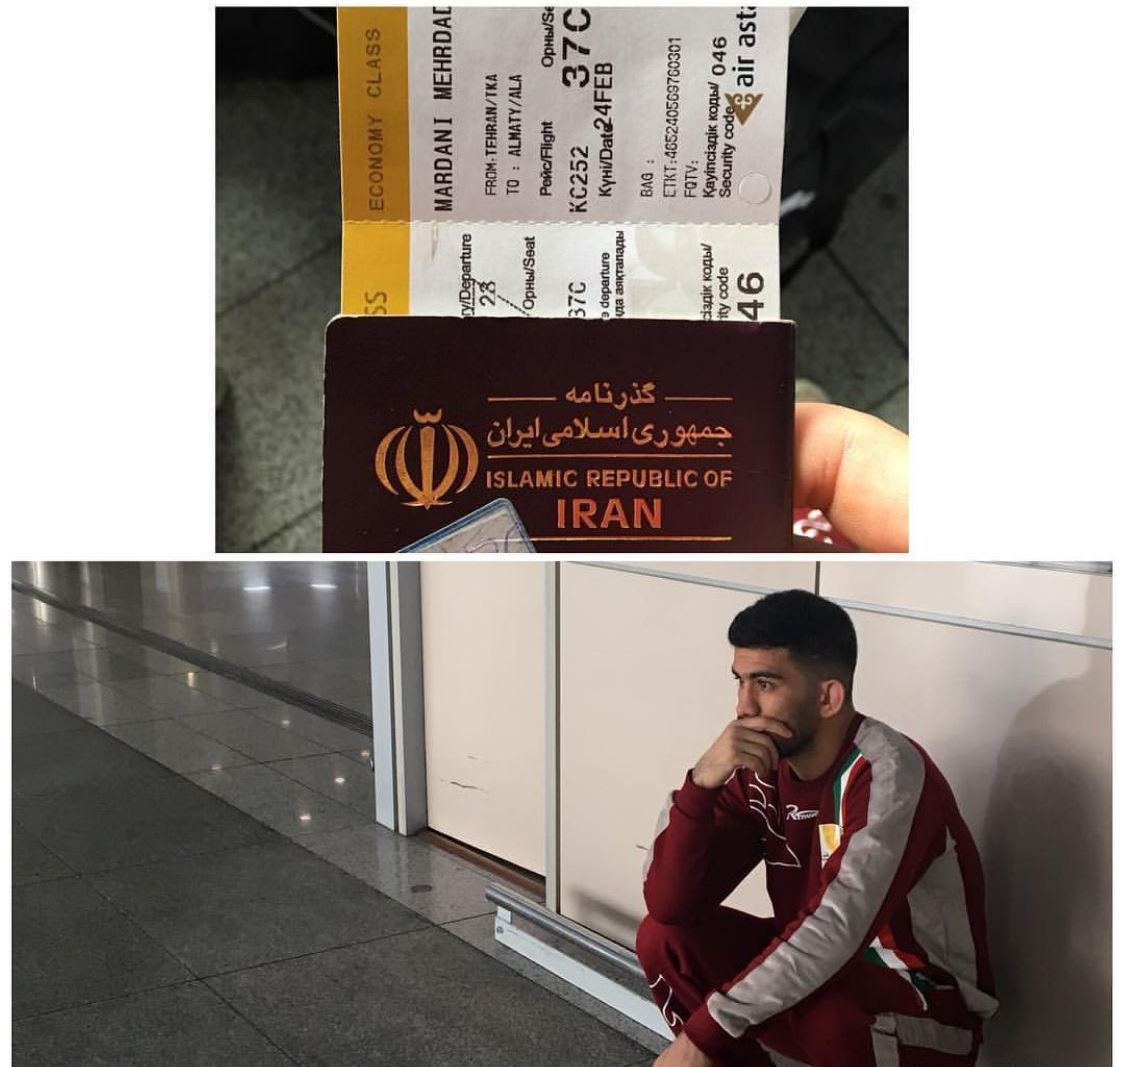 ملی پوش کشتی ایران در فرودگاه دیپورت شد! + عکس